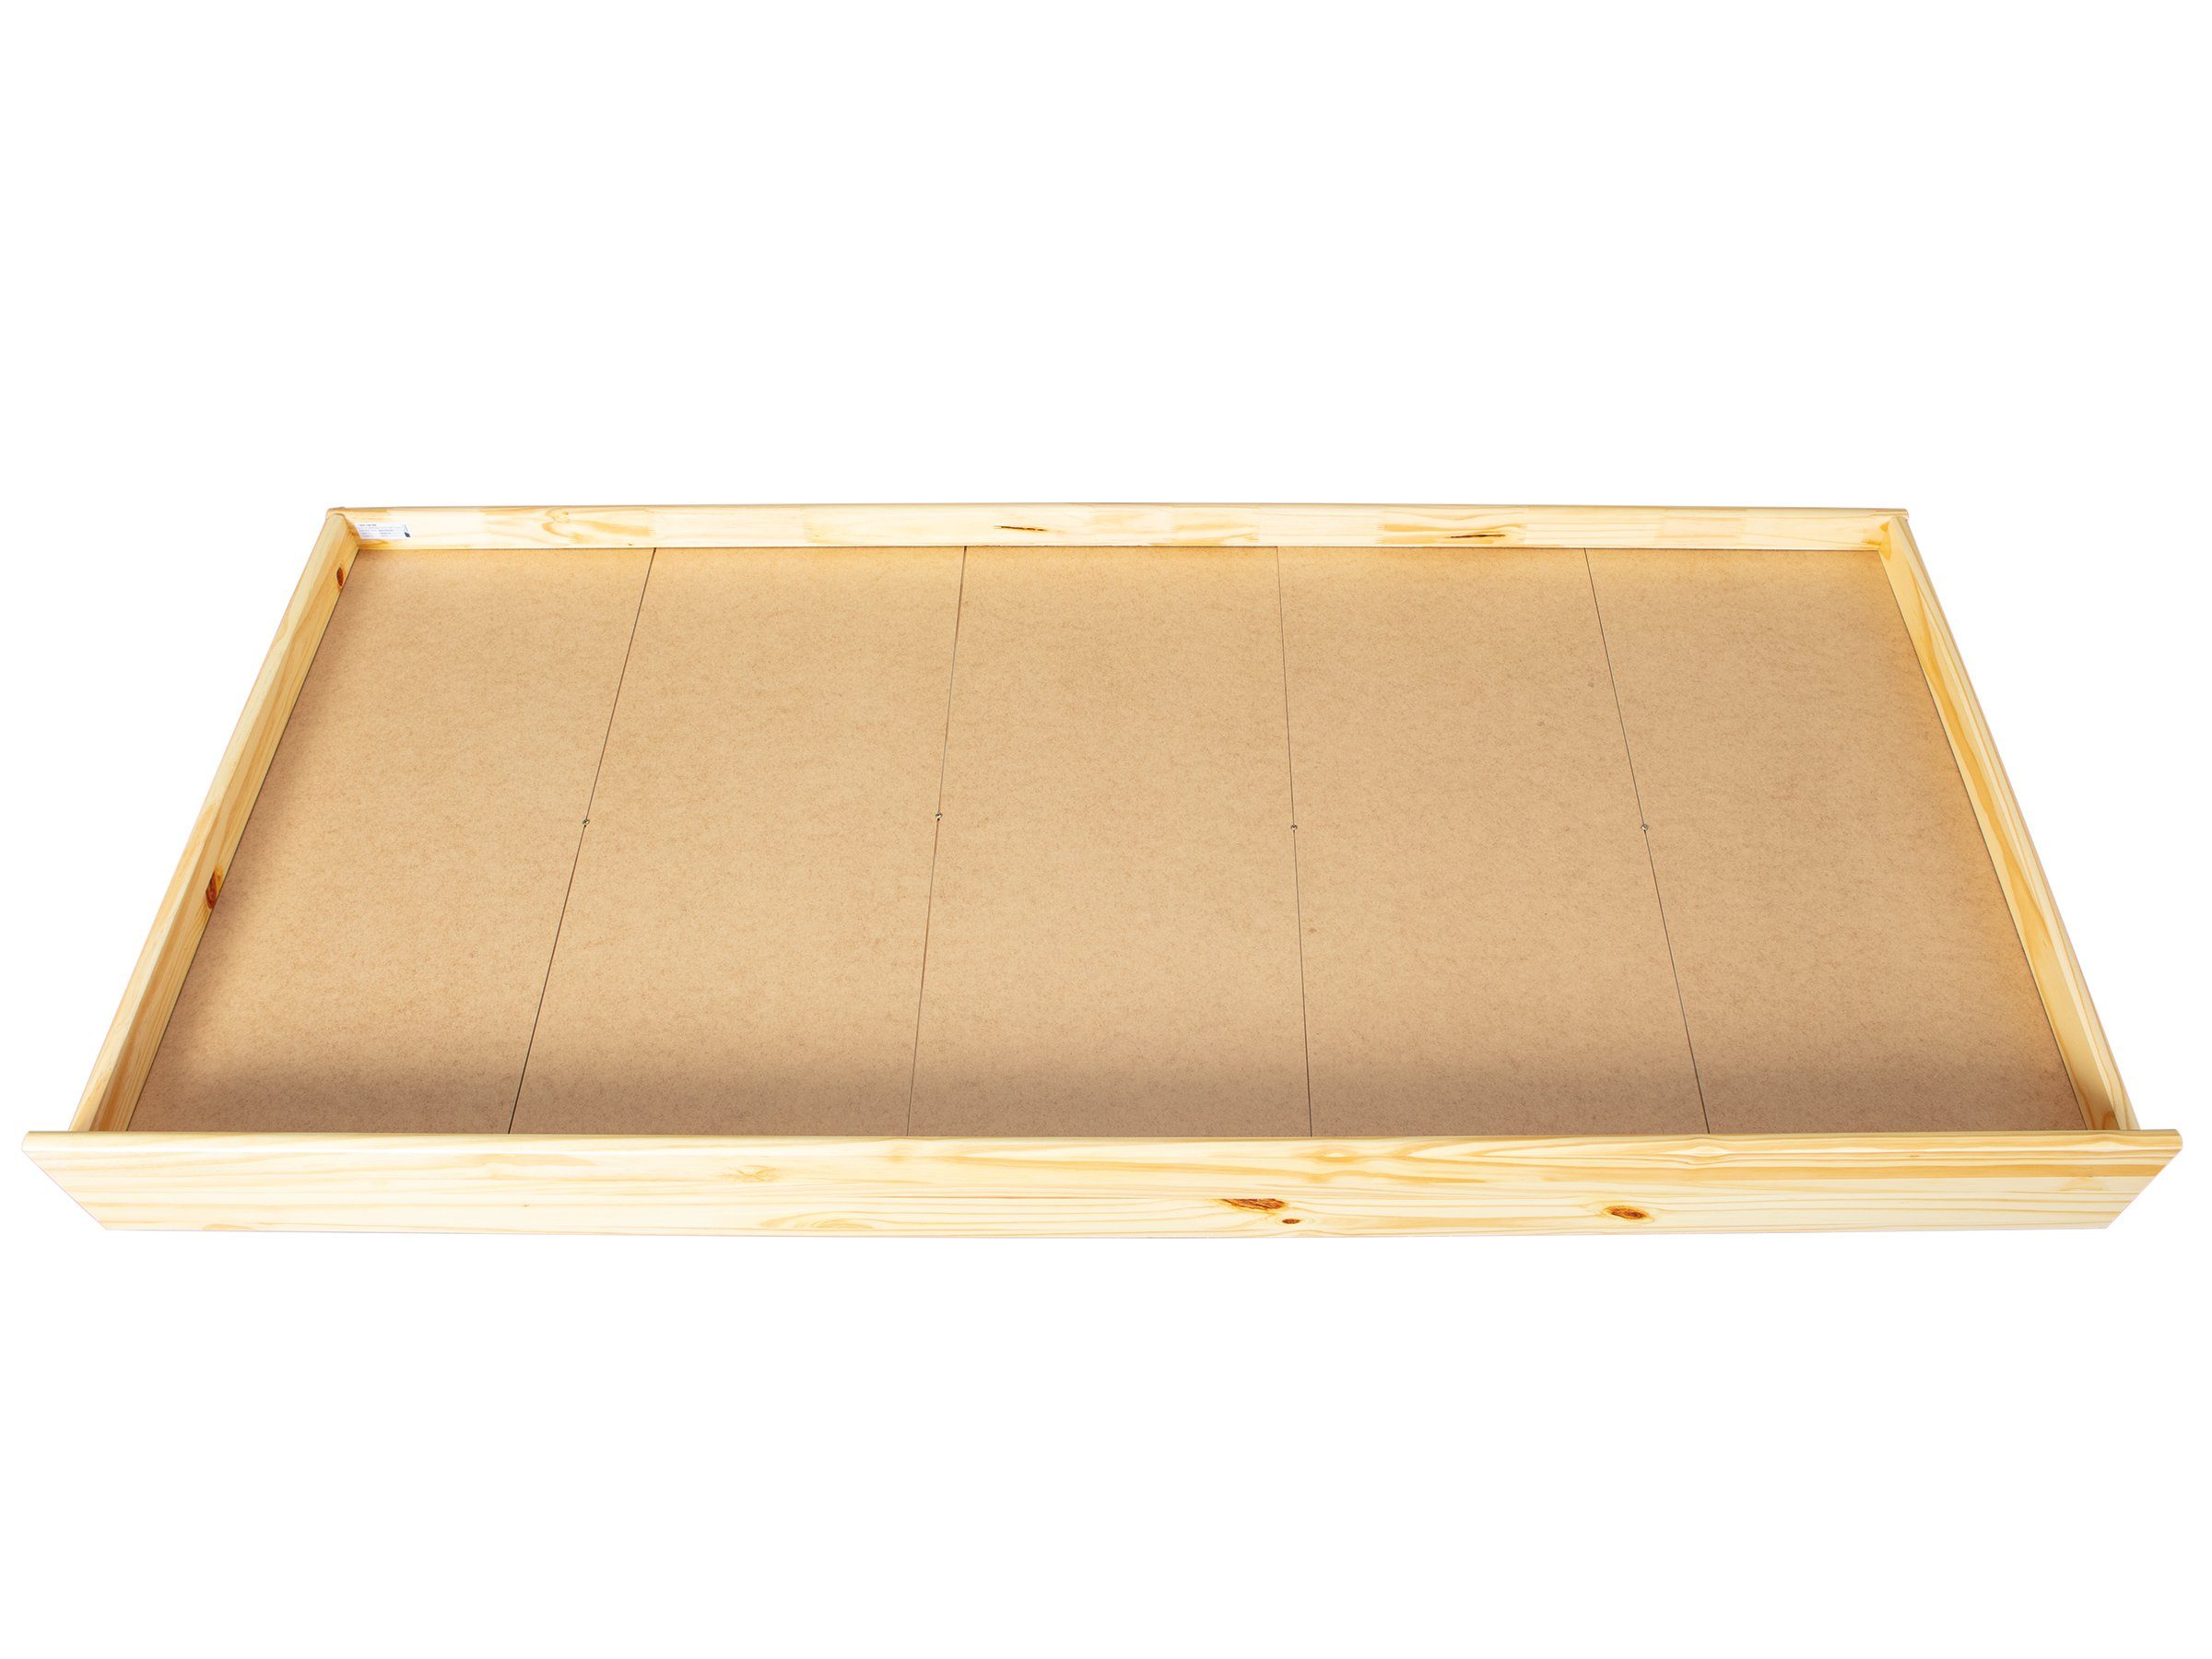 Inter Link Bettschubkasten LATI 200, aus Massivholz, natur lackiert, für 200 cm lange Betten